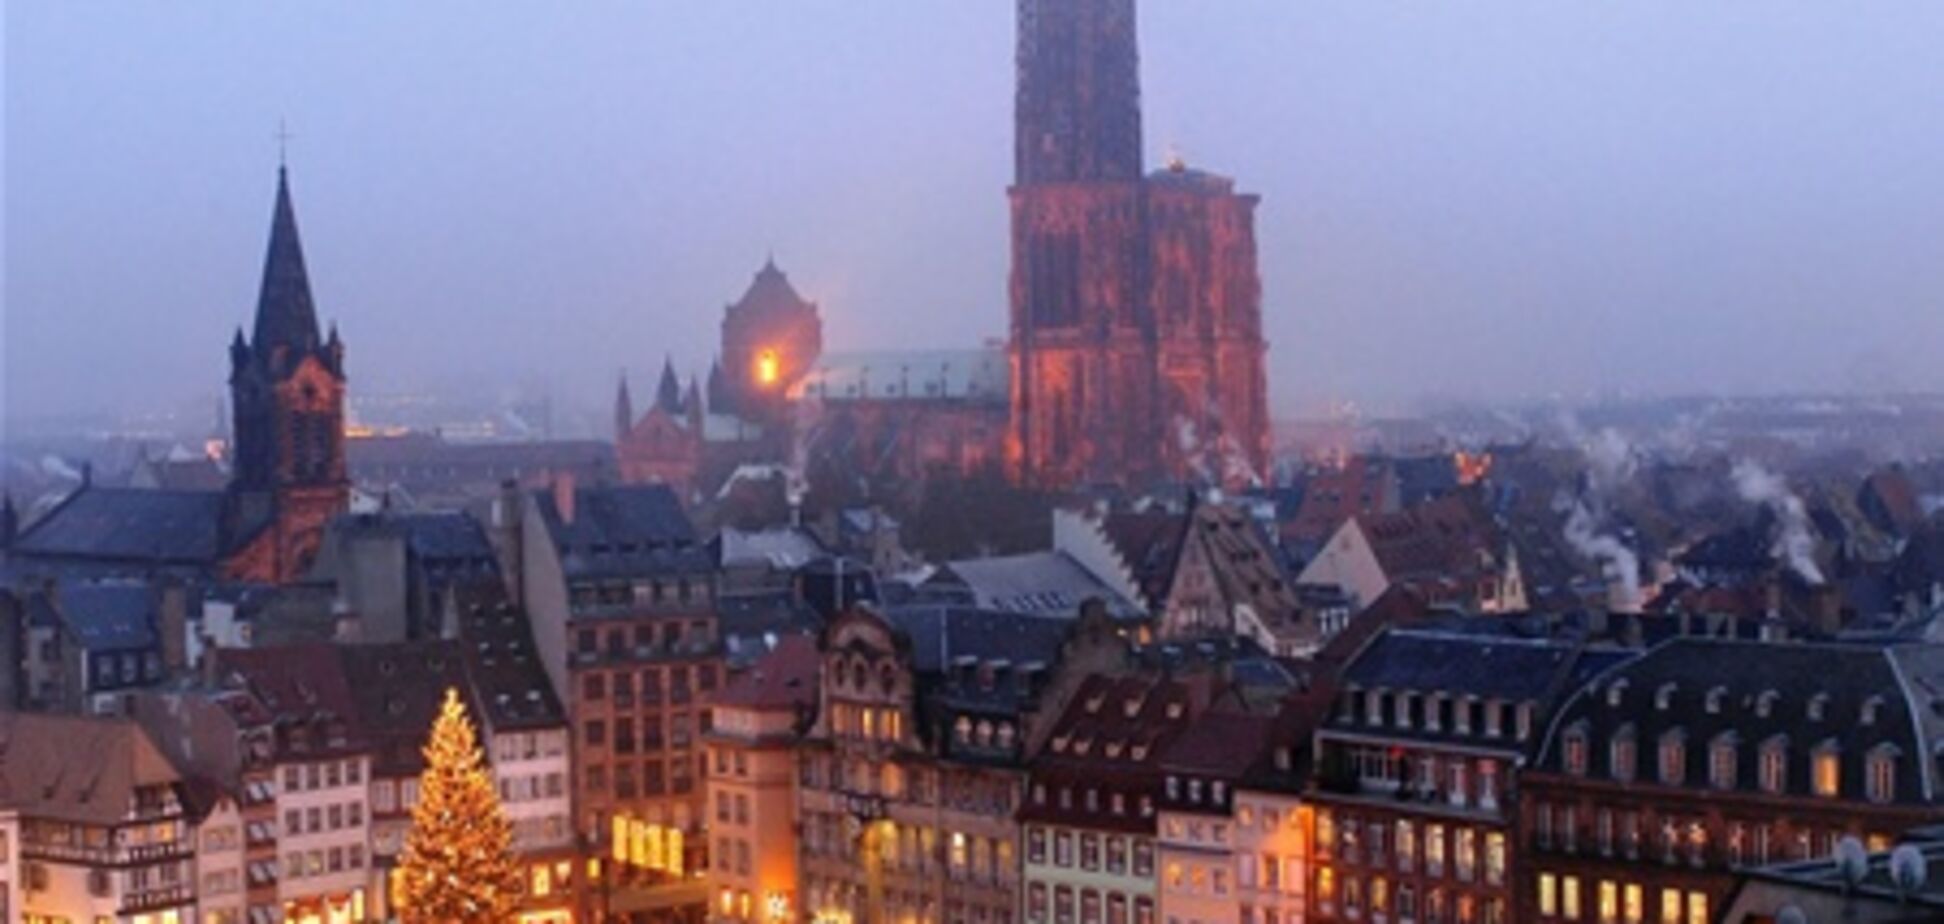 Знаменитая рождественская ярмарка открывается в Страсбурге